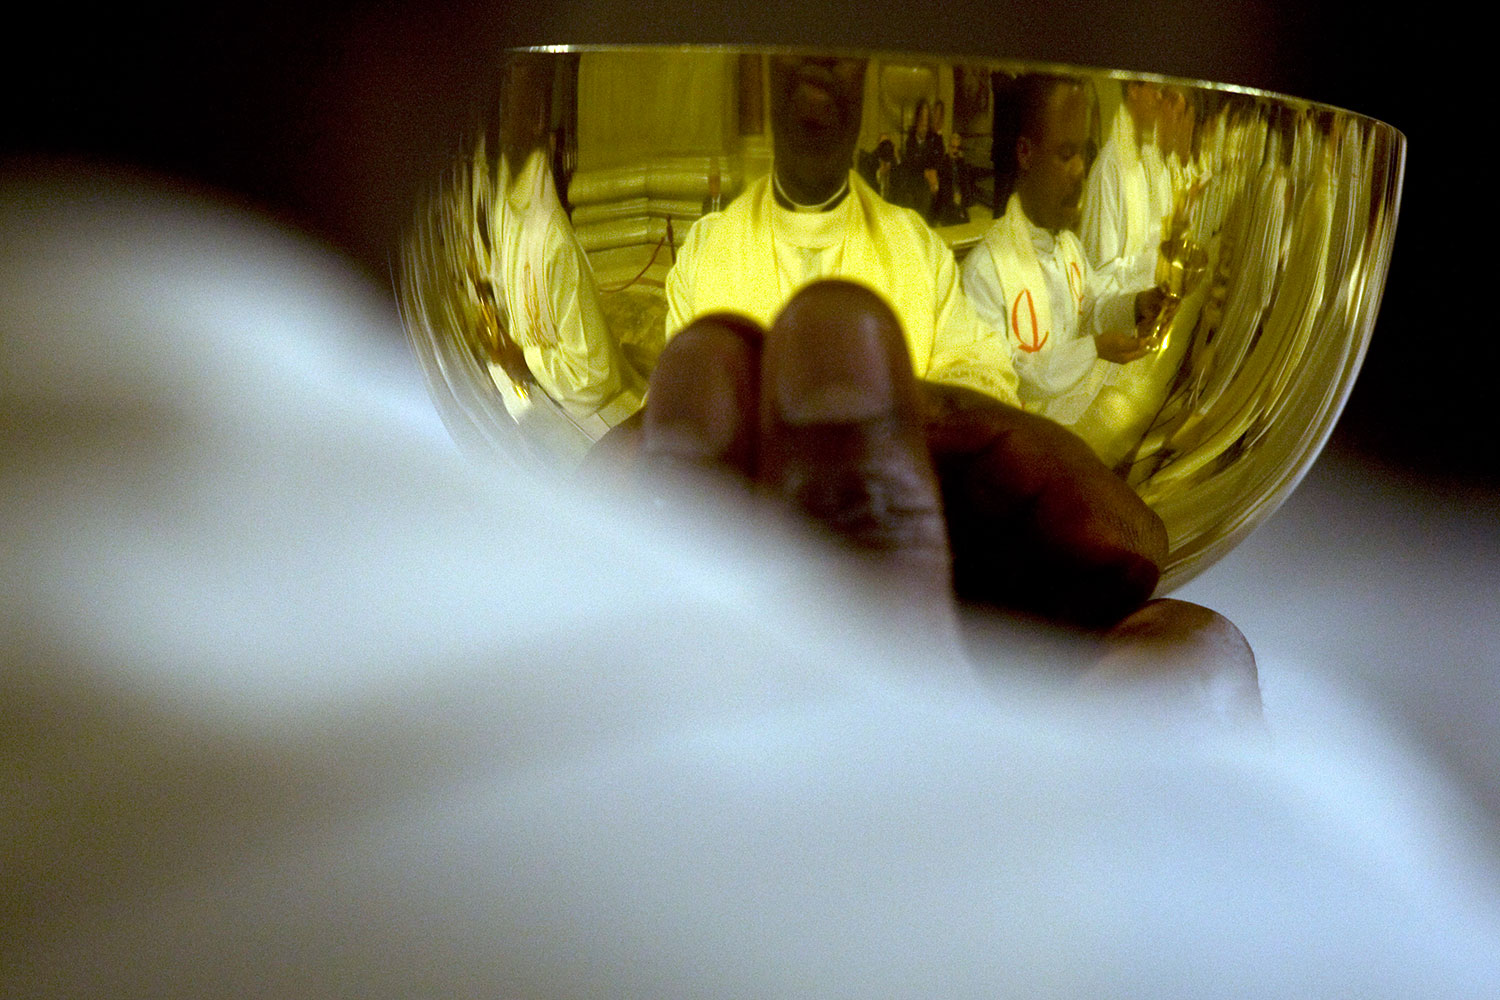 Una media de 74 litros de vino al año consume cada habitante en El Vaticano